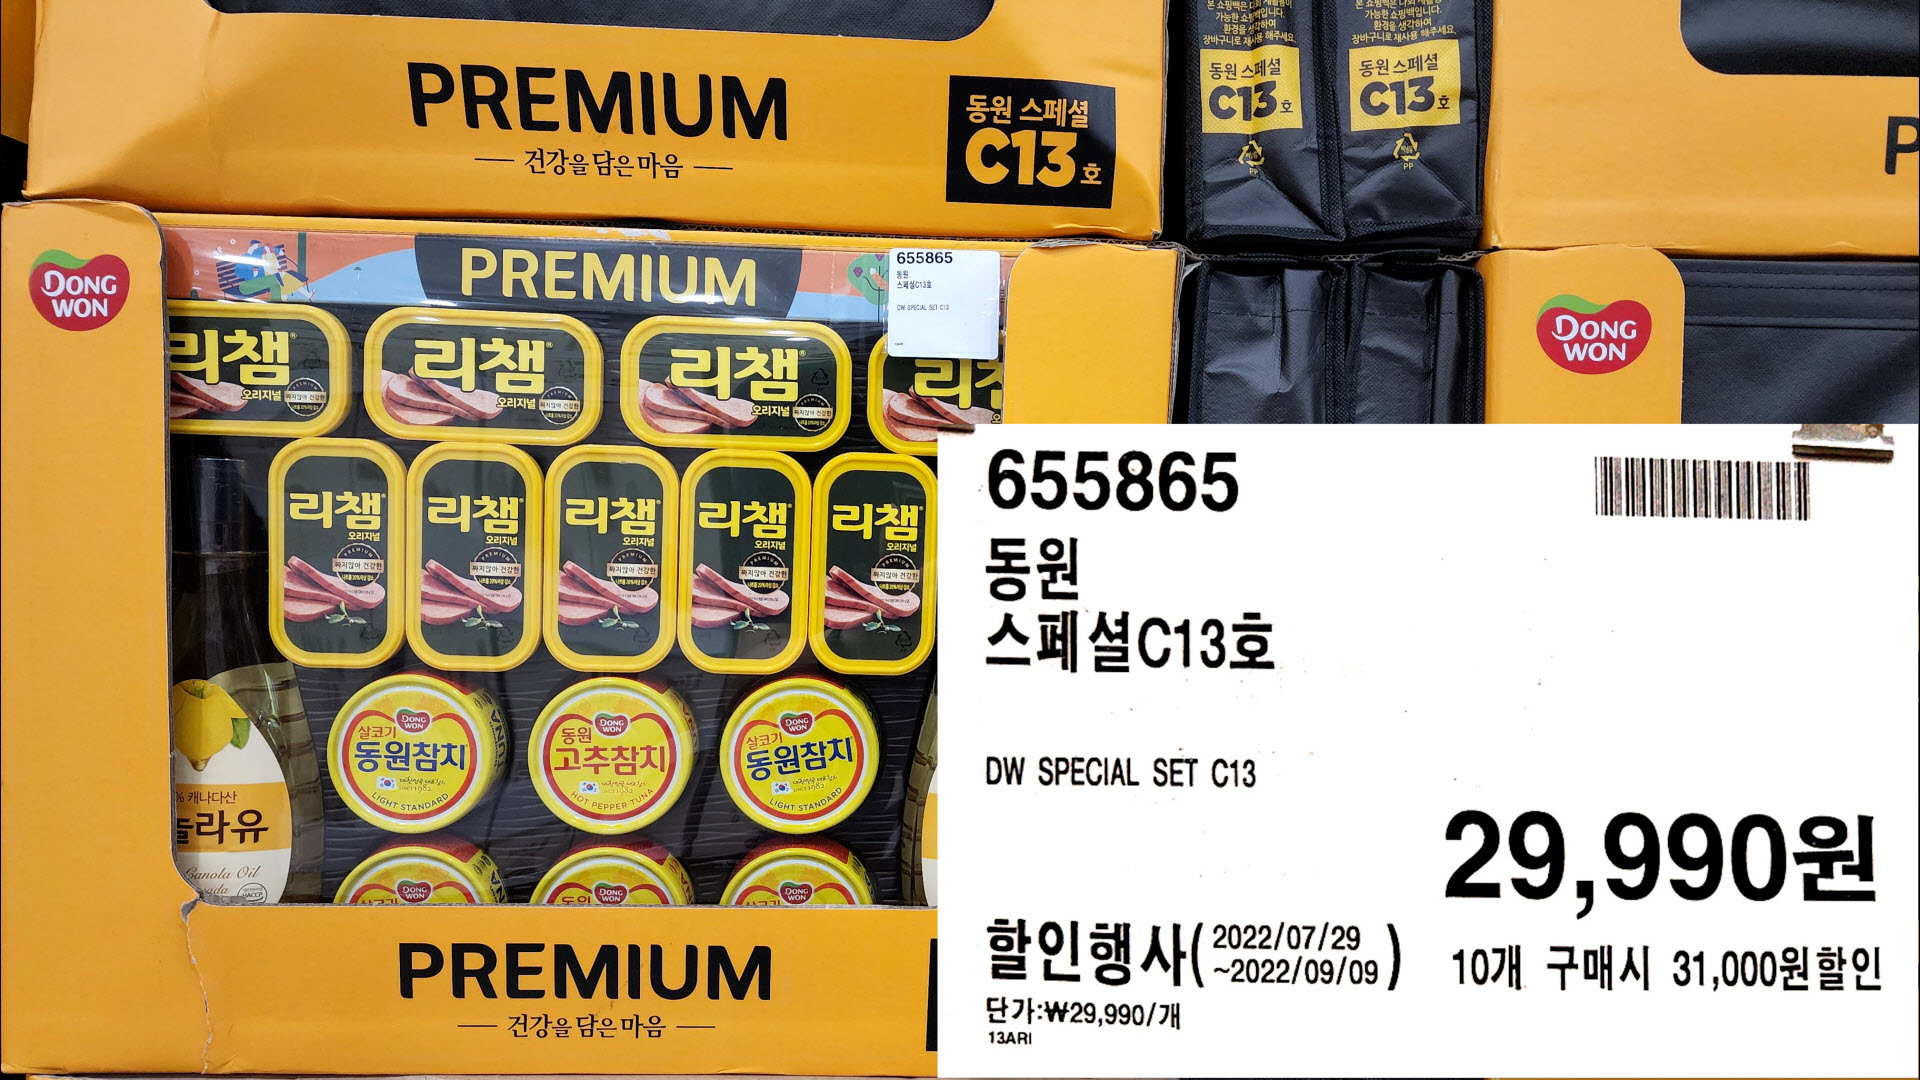 동원
스페셜C13호
DW SPECIAL SET C13
10개 구매시 31,000원할인
단가:₩29,990/개
29,990원